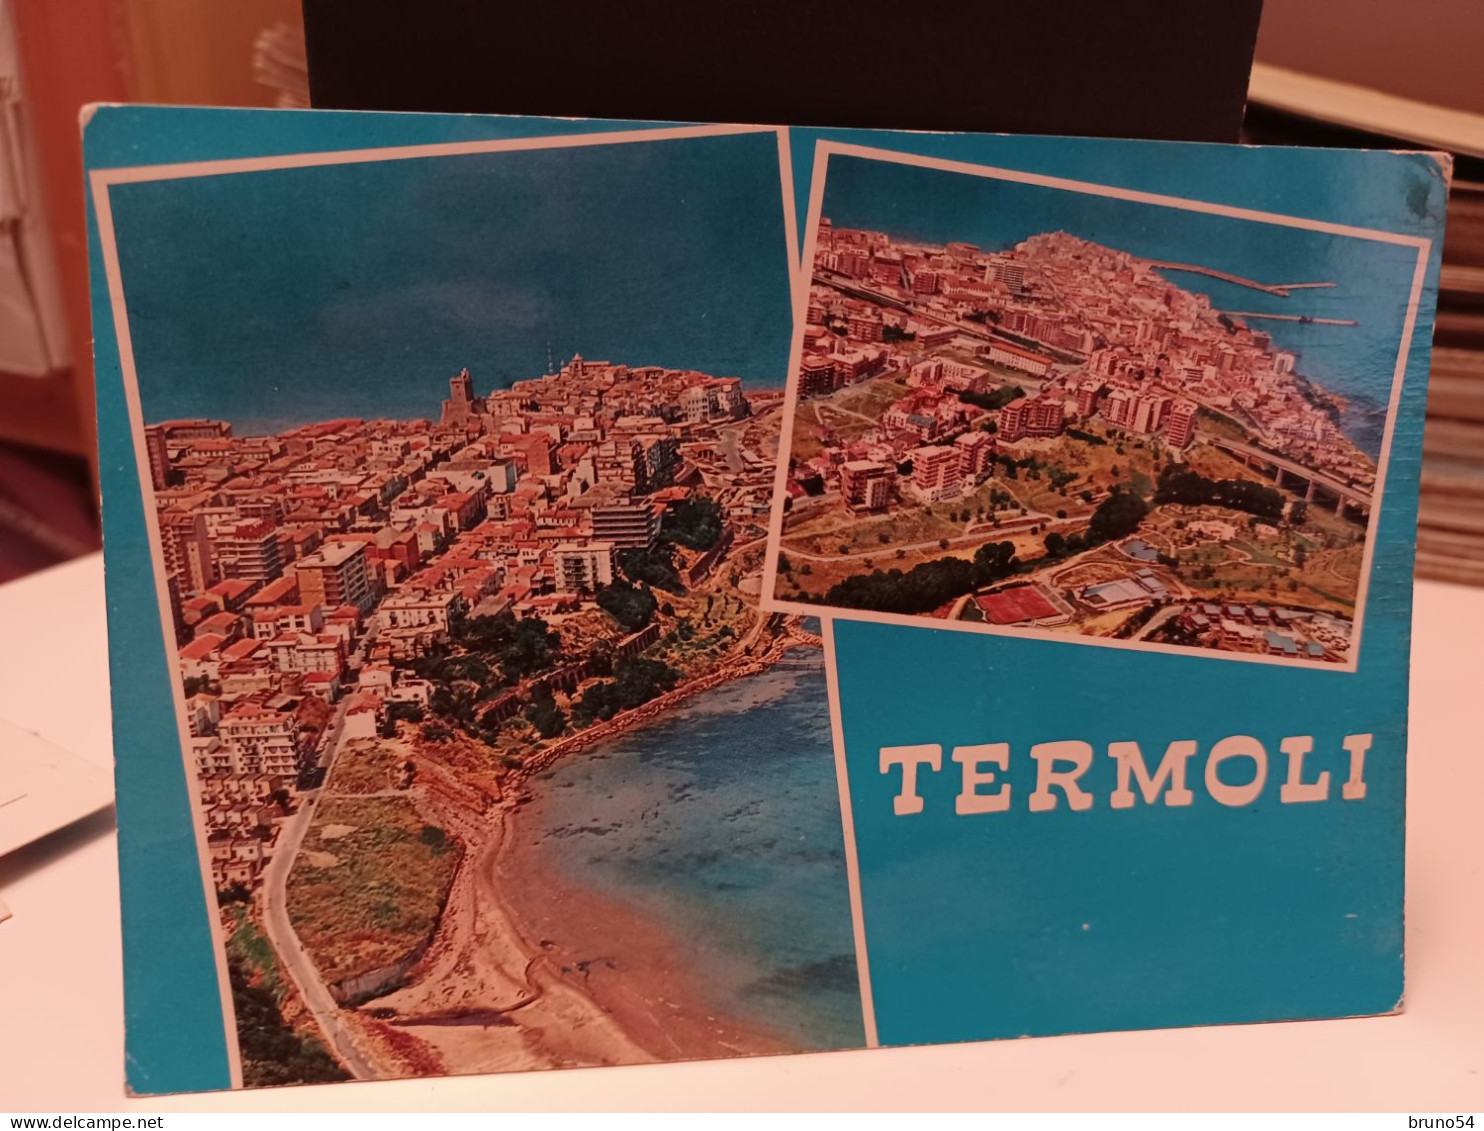 5 cartoline Termoli provincia Campobasso anni 70, camping La Vela,auto tedesca, saluti da,la cattedrale